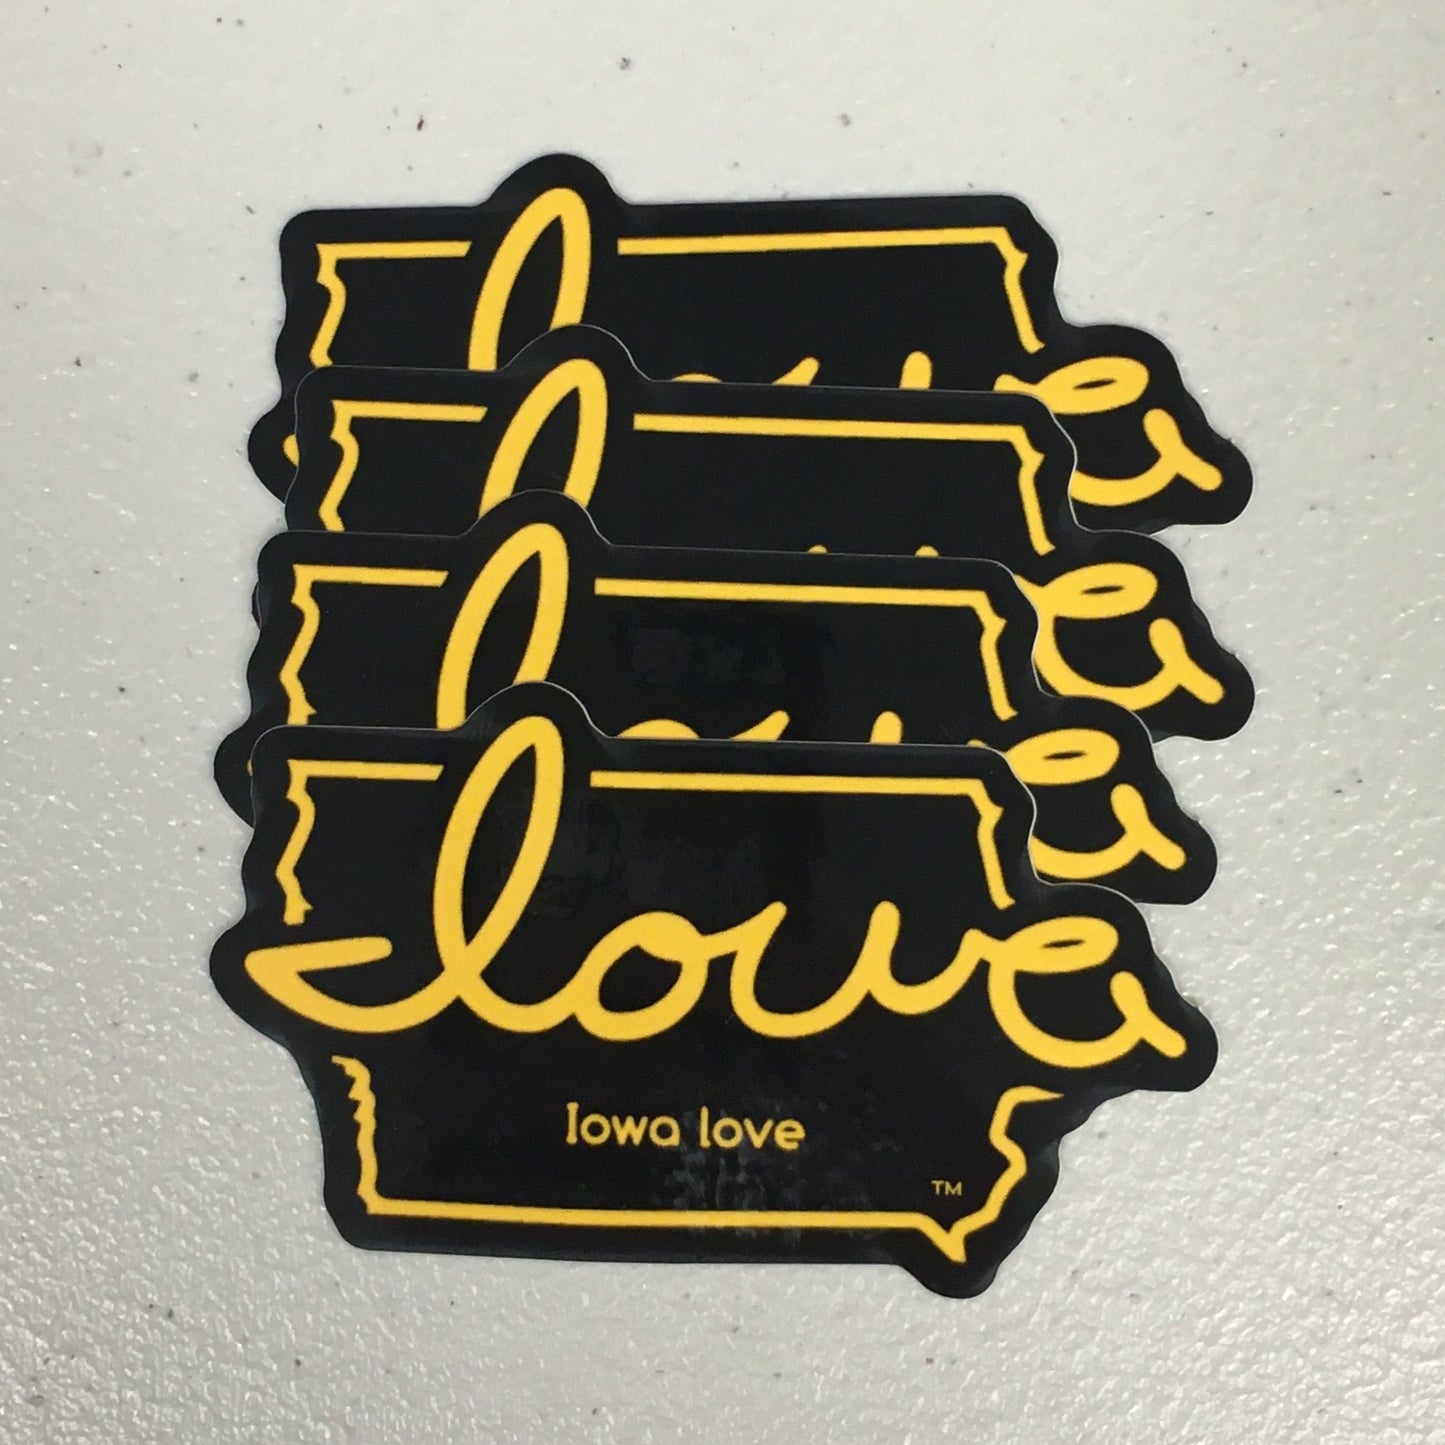 "Iowa love" Black & Gold Sticker